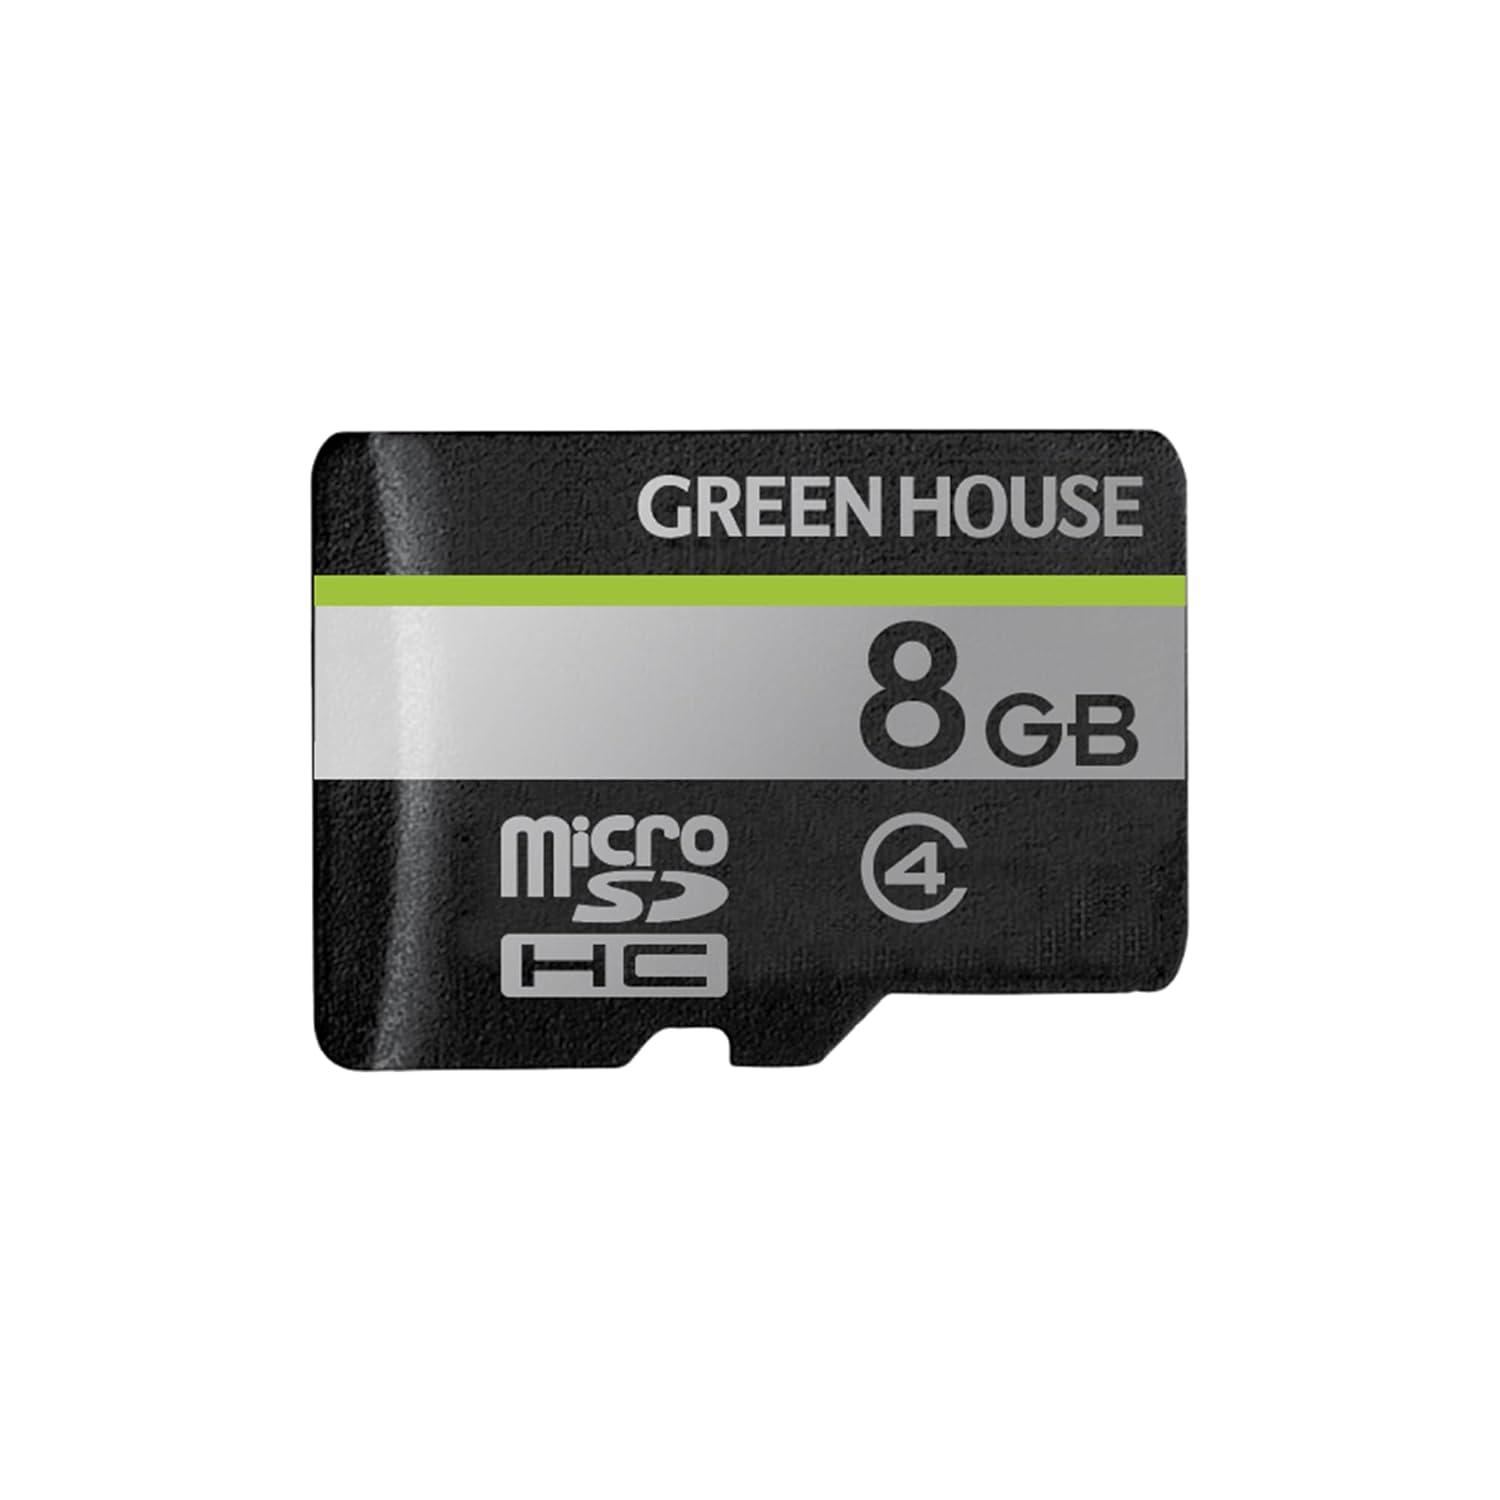 GH-SDM-D8G microSDHCJ[h NX4 8GB(GH-SDM-D8G) O[nEX